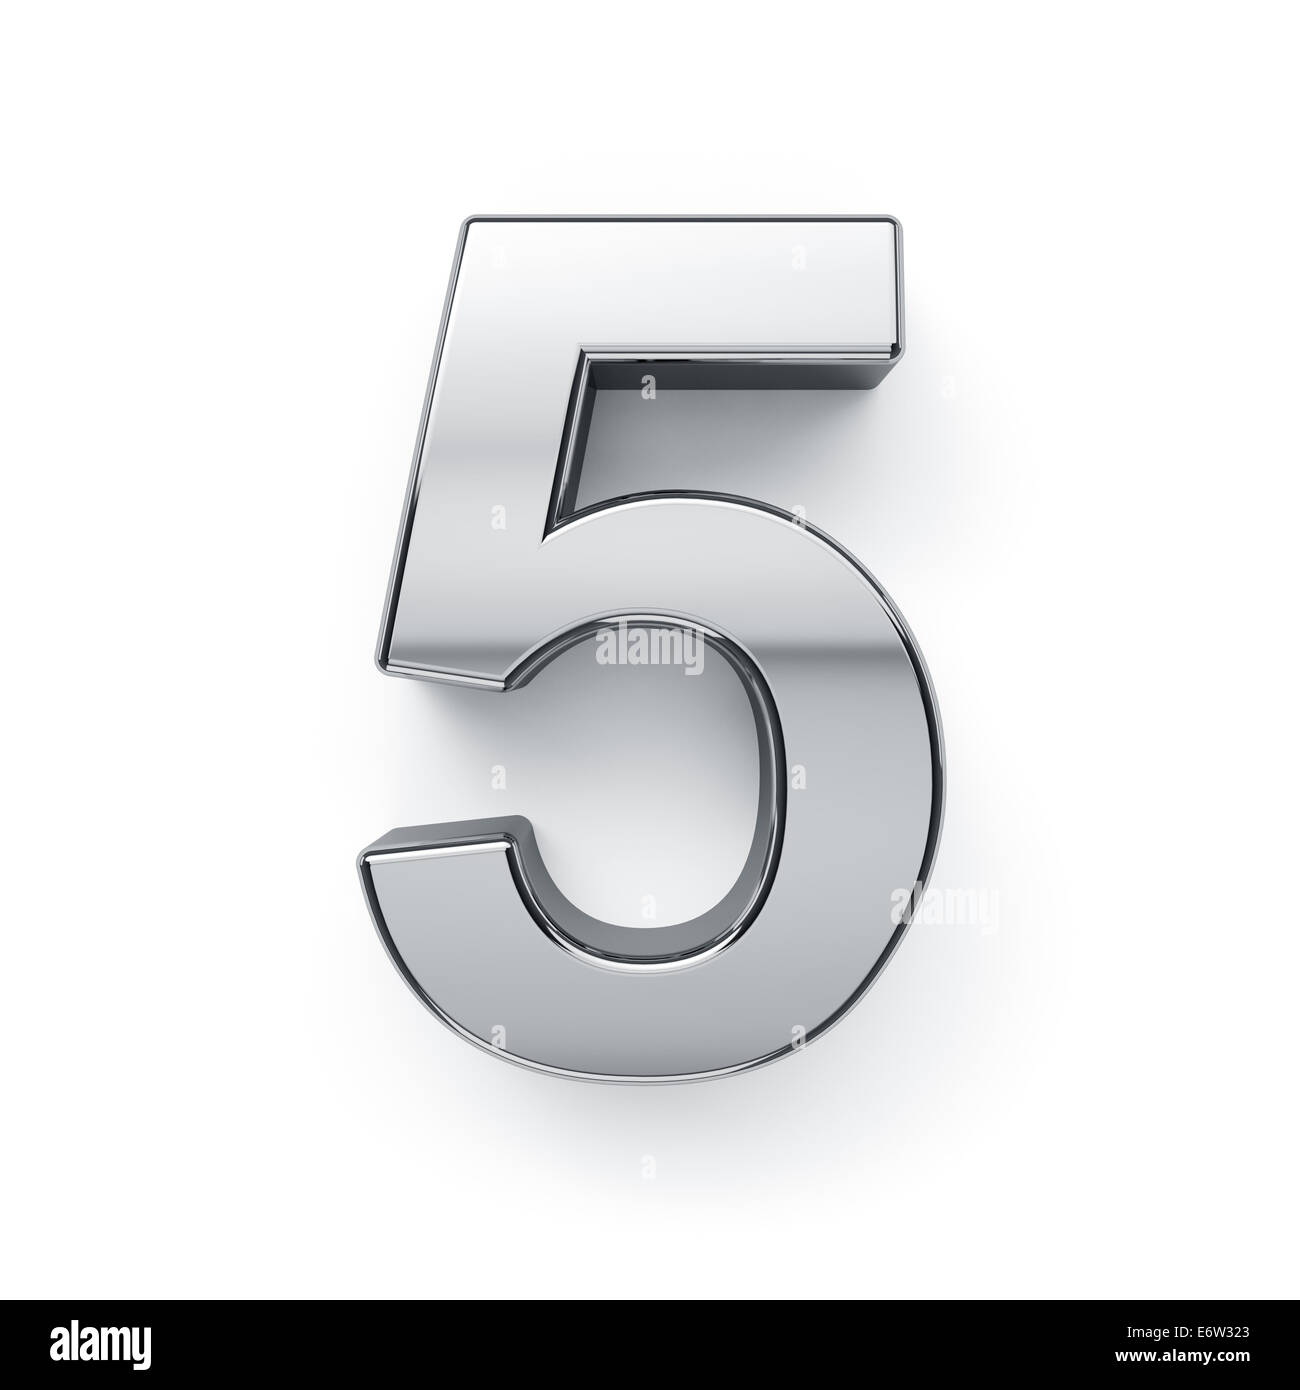 3D render metallico di cinque cifre simbolo - 5. Isolato su sfondo bianco Foto Stock